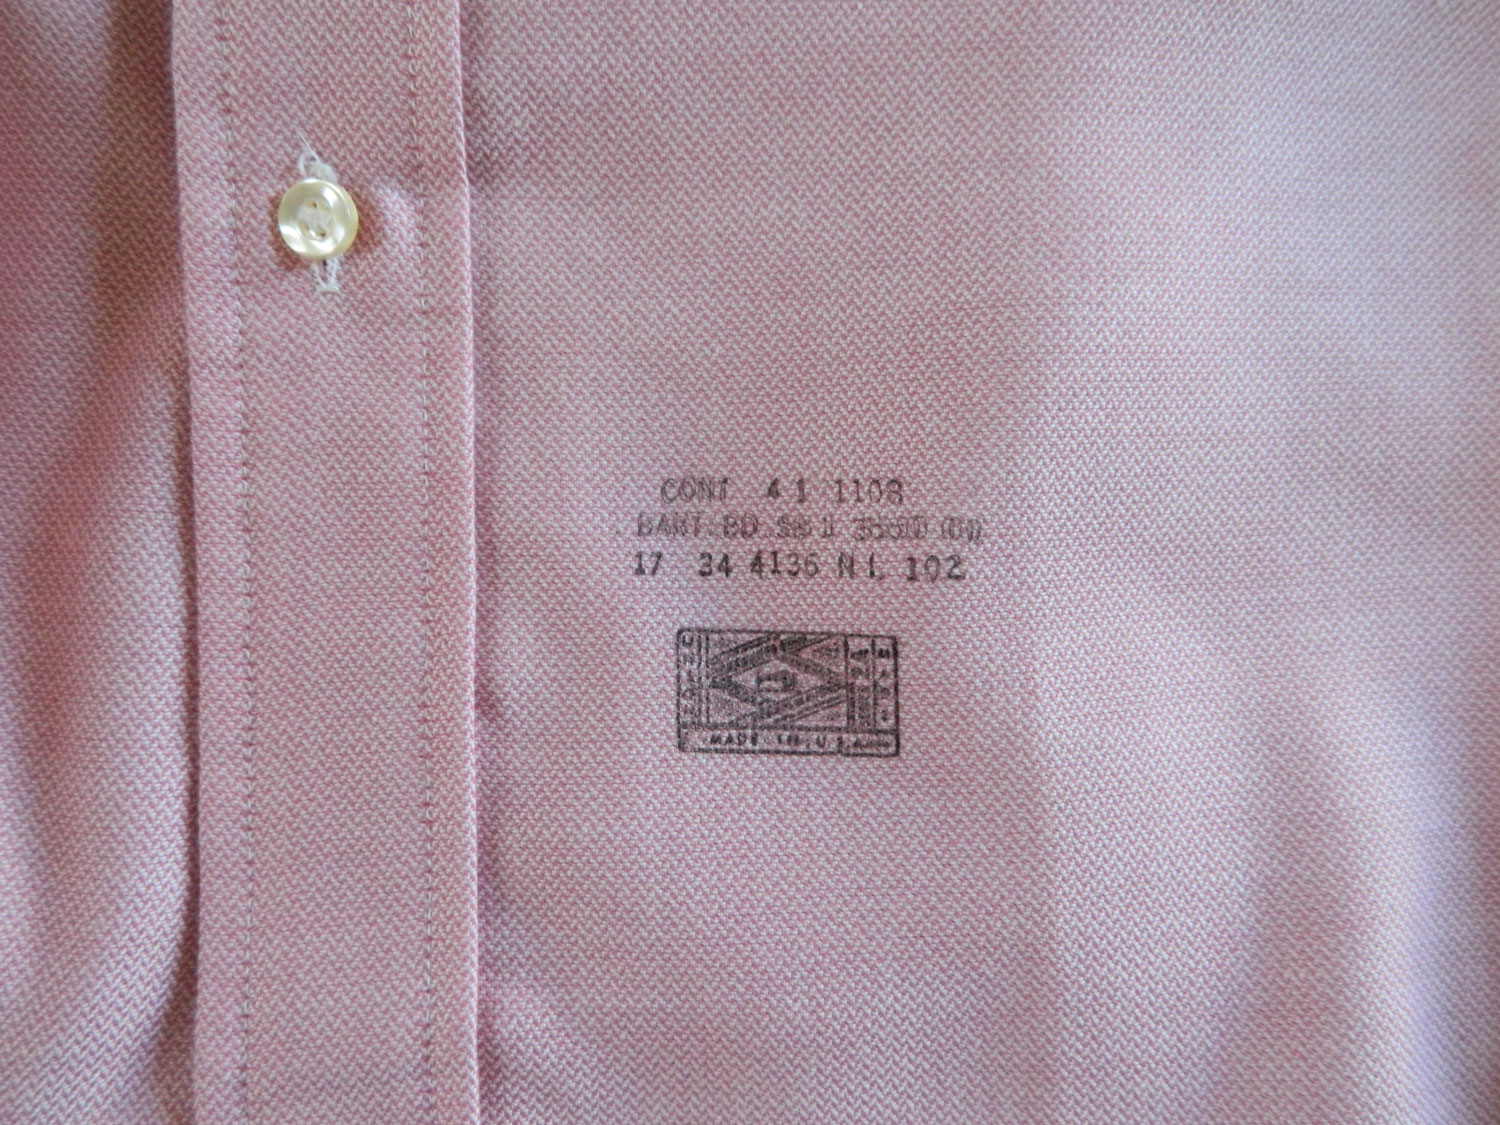 1970s pink dress shirt